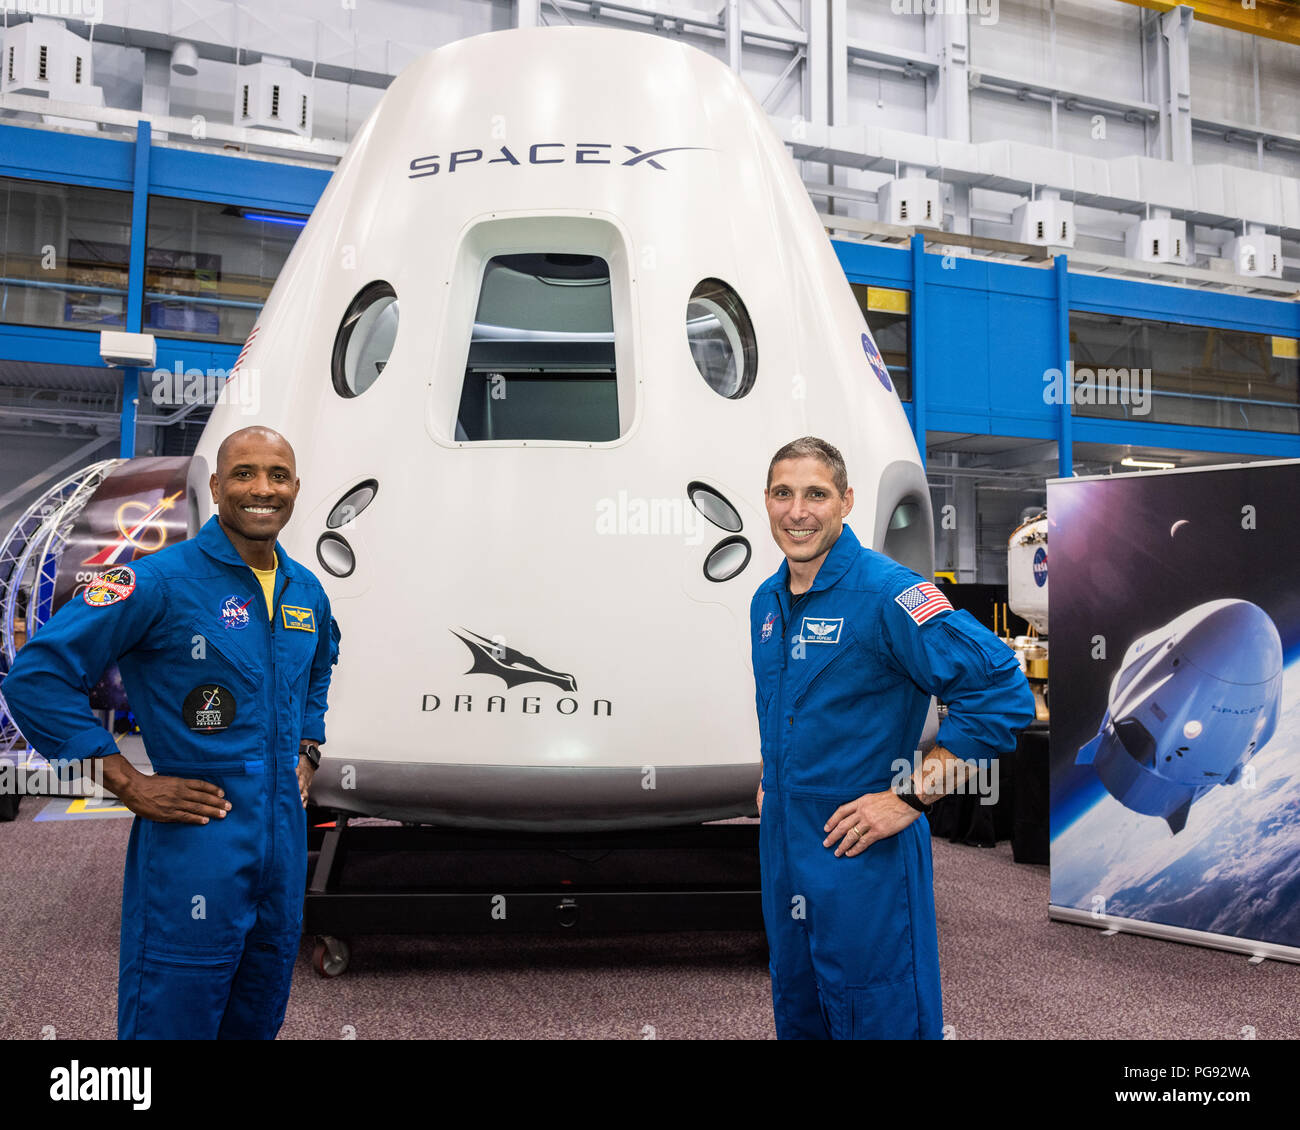 Les astronautes de la NASA Victor Glover et Mike Hopkins, attribué à voler sur la première mission opérationnelle de l'équipage SpaceX Dragon, posent devant une maquette de l'engin spatial au Centre spatial Johnson de la NASA à Houston, Texas, le 2 août 2018, avant l'annonce de l'agence commerciale de leur affectation de l'équipage du 3 août. Neuf astronautes américains ont été sélectionnés pour l'équipe commerciale sur les affectations de vol les premiers essais en vol et les missions opérationnelles pour la CST-100 de Boeing et l'équipage du Starliner SpaceX Dragon. Banque D'Images